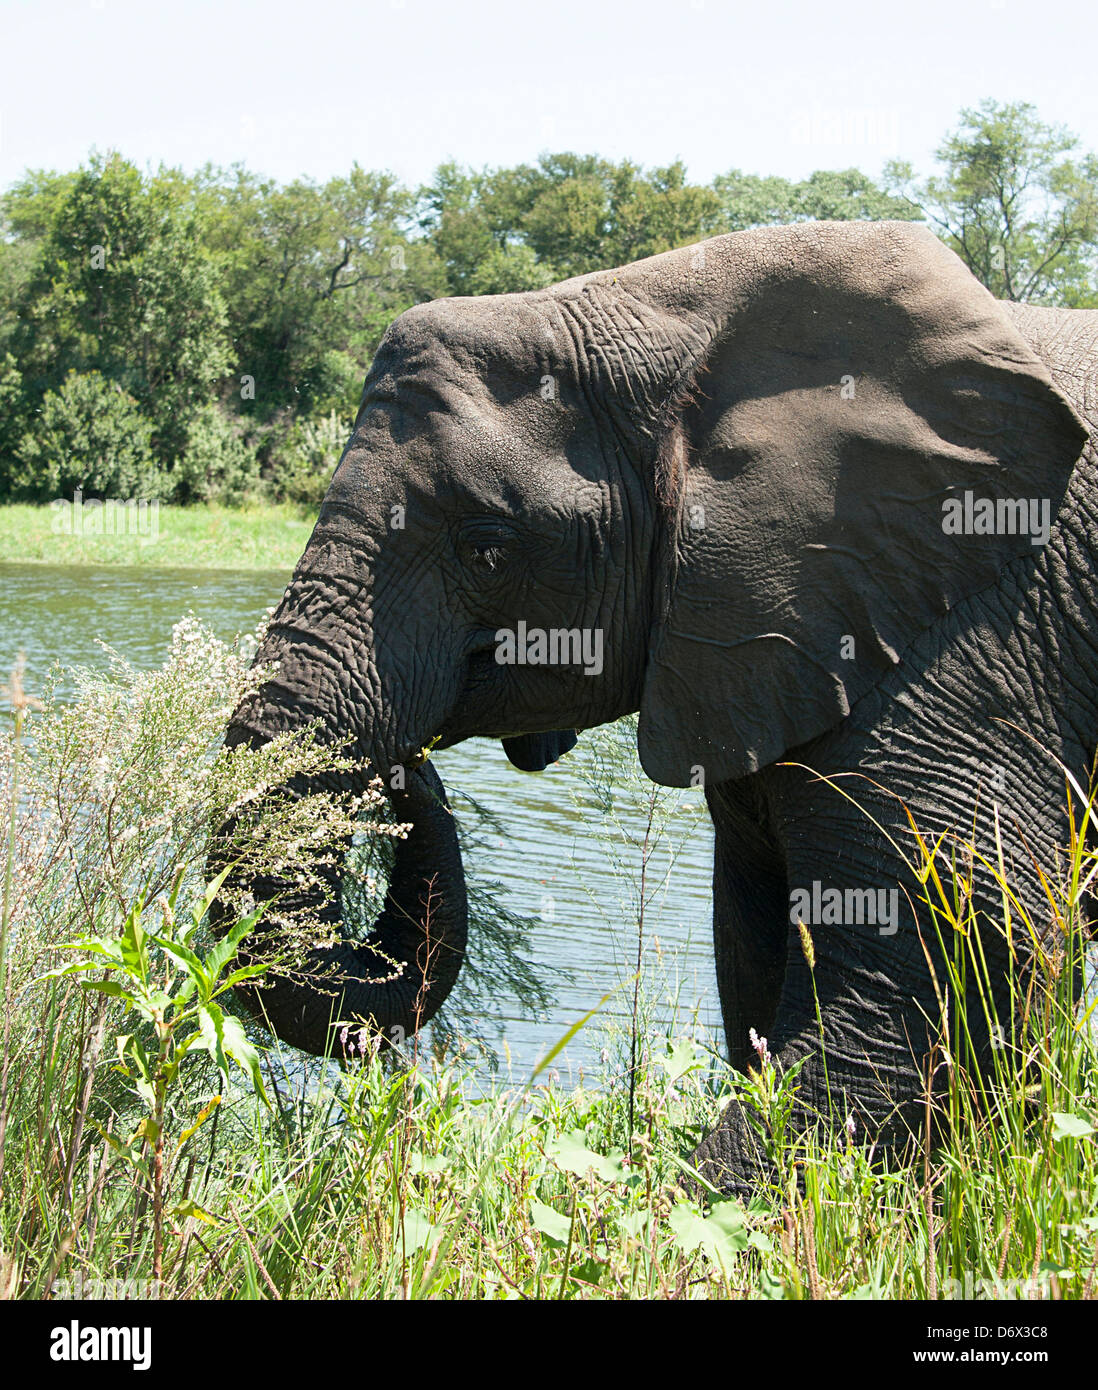 Bénéficiant de l'éléphant près du lac de l'habitat. Antelope Park, Zimbabwe. Banque D'Images